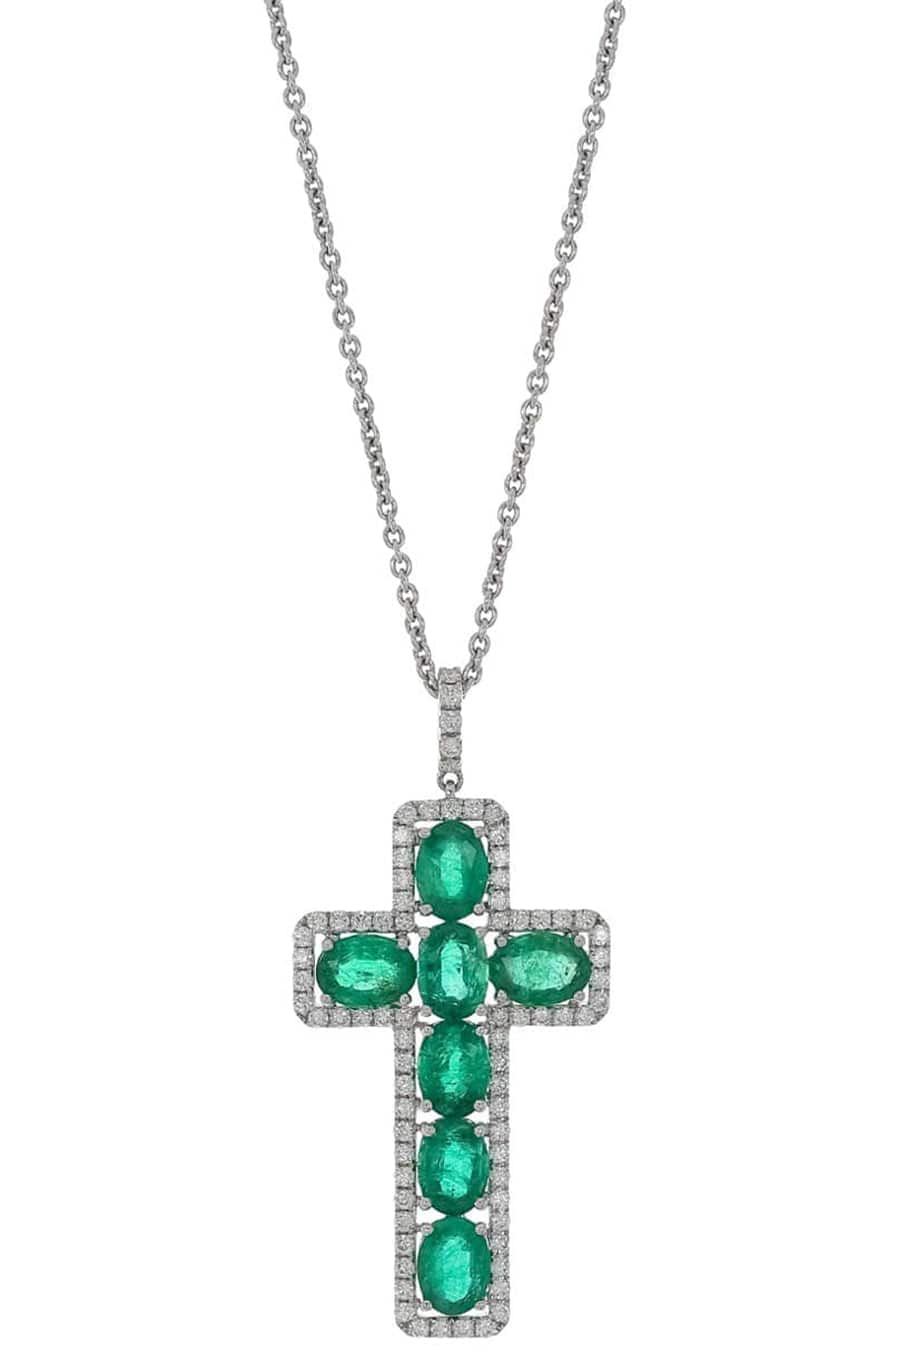 PIRANESI-Zambian Emerald and Diamond Cross Necklace-WHITE GOLD